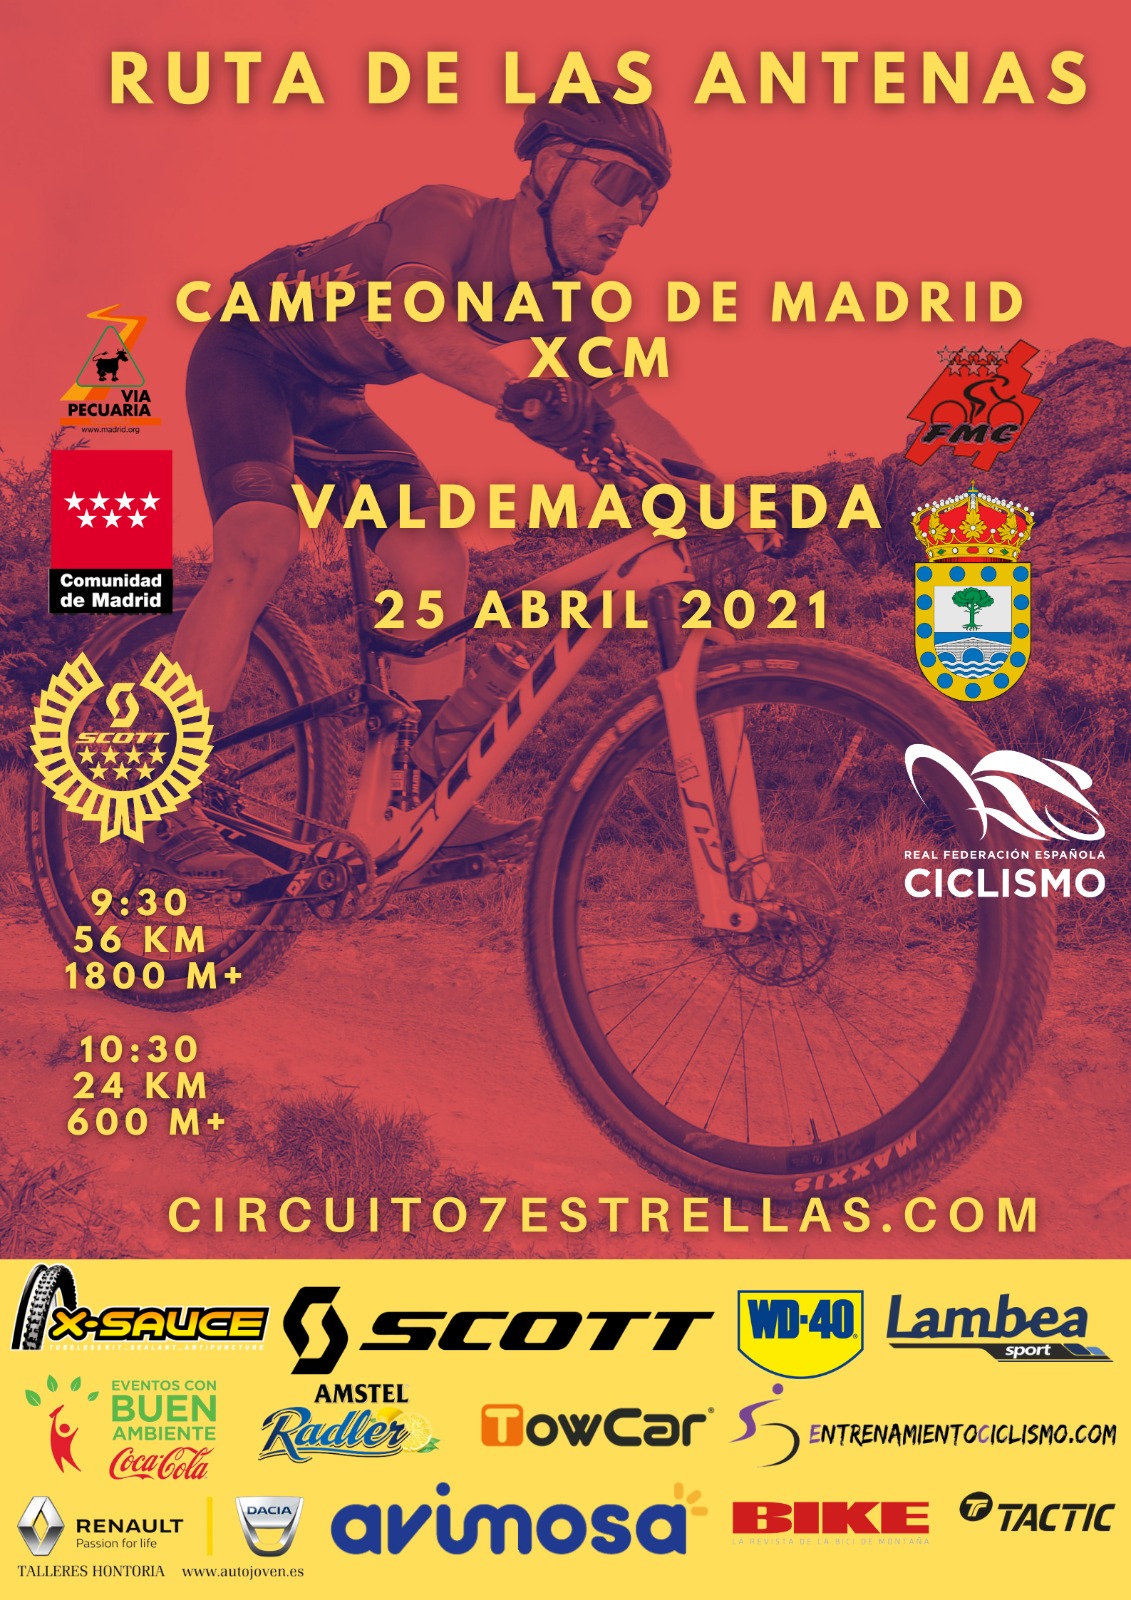 Los Campeonatos de Madrid de maratón (XCM) se ponen en juego en Valdemaqueda